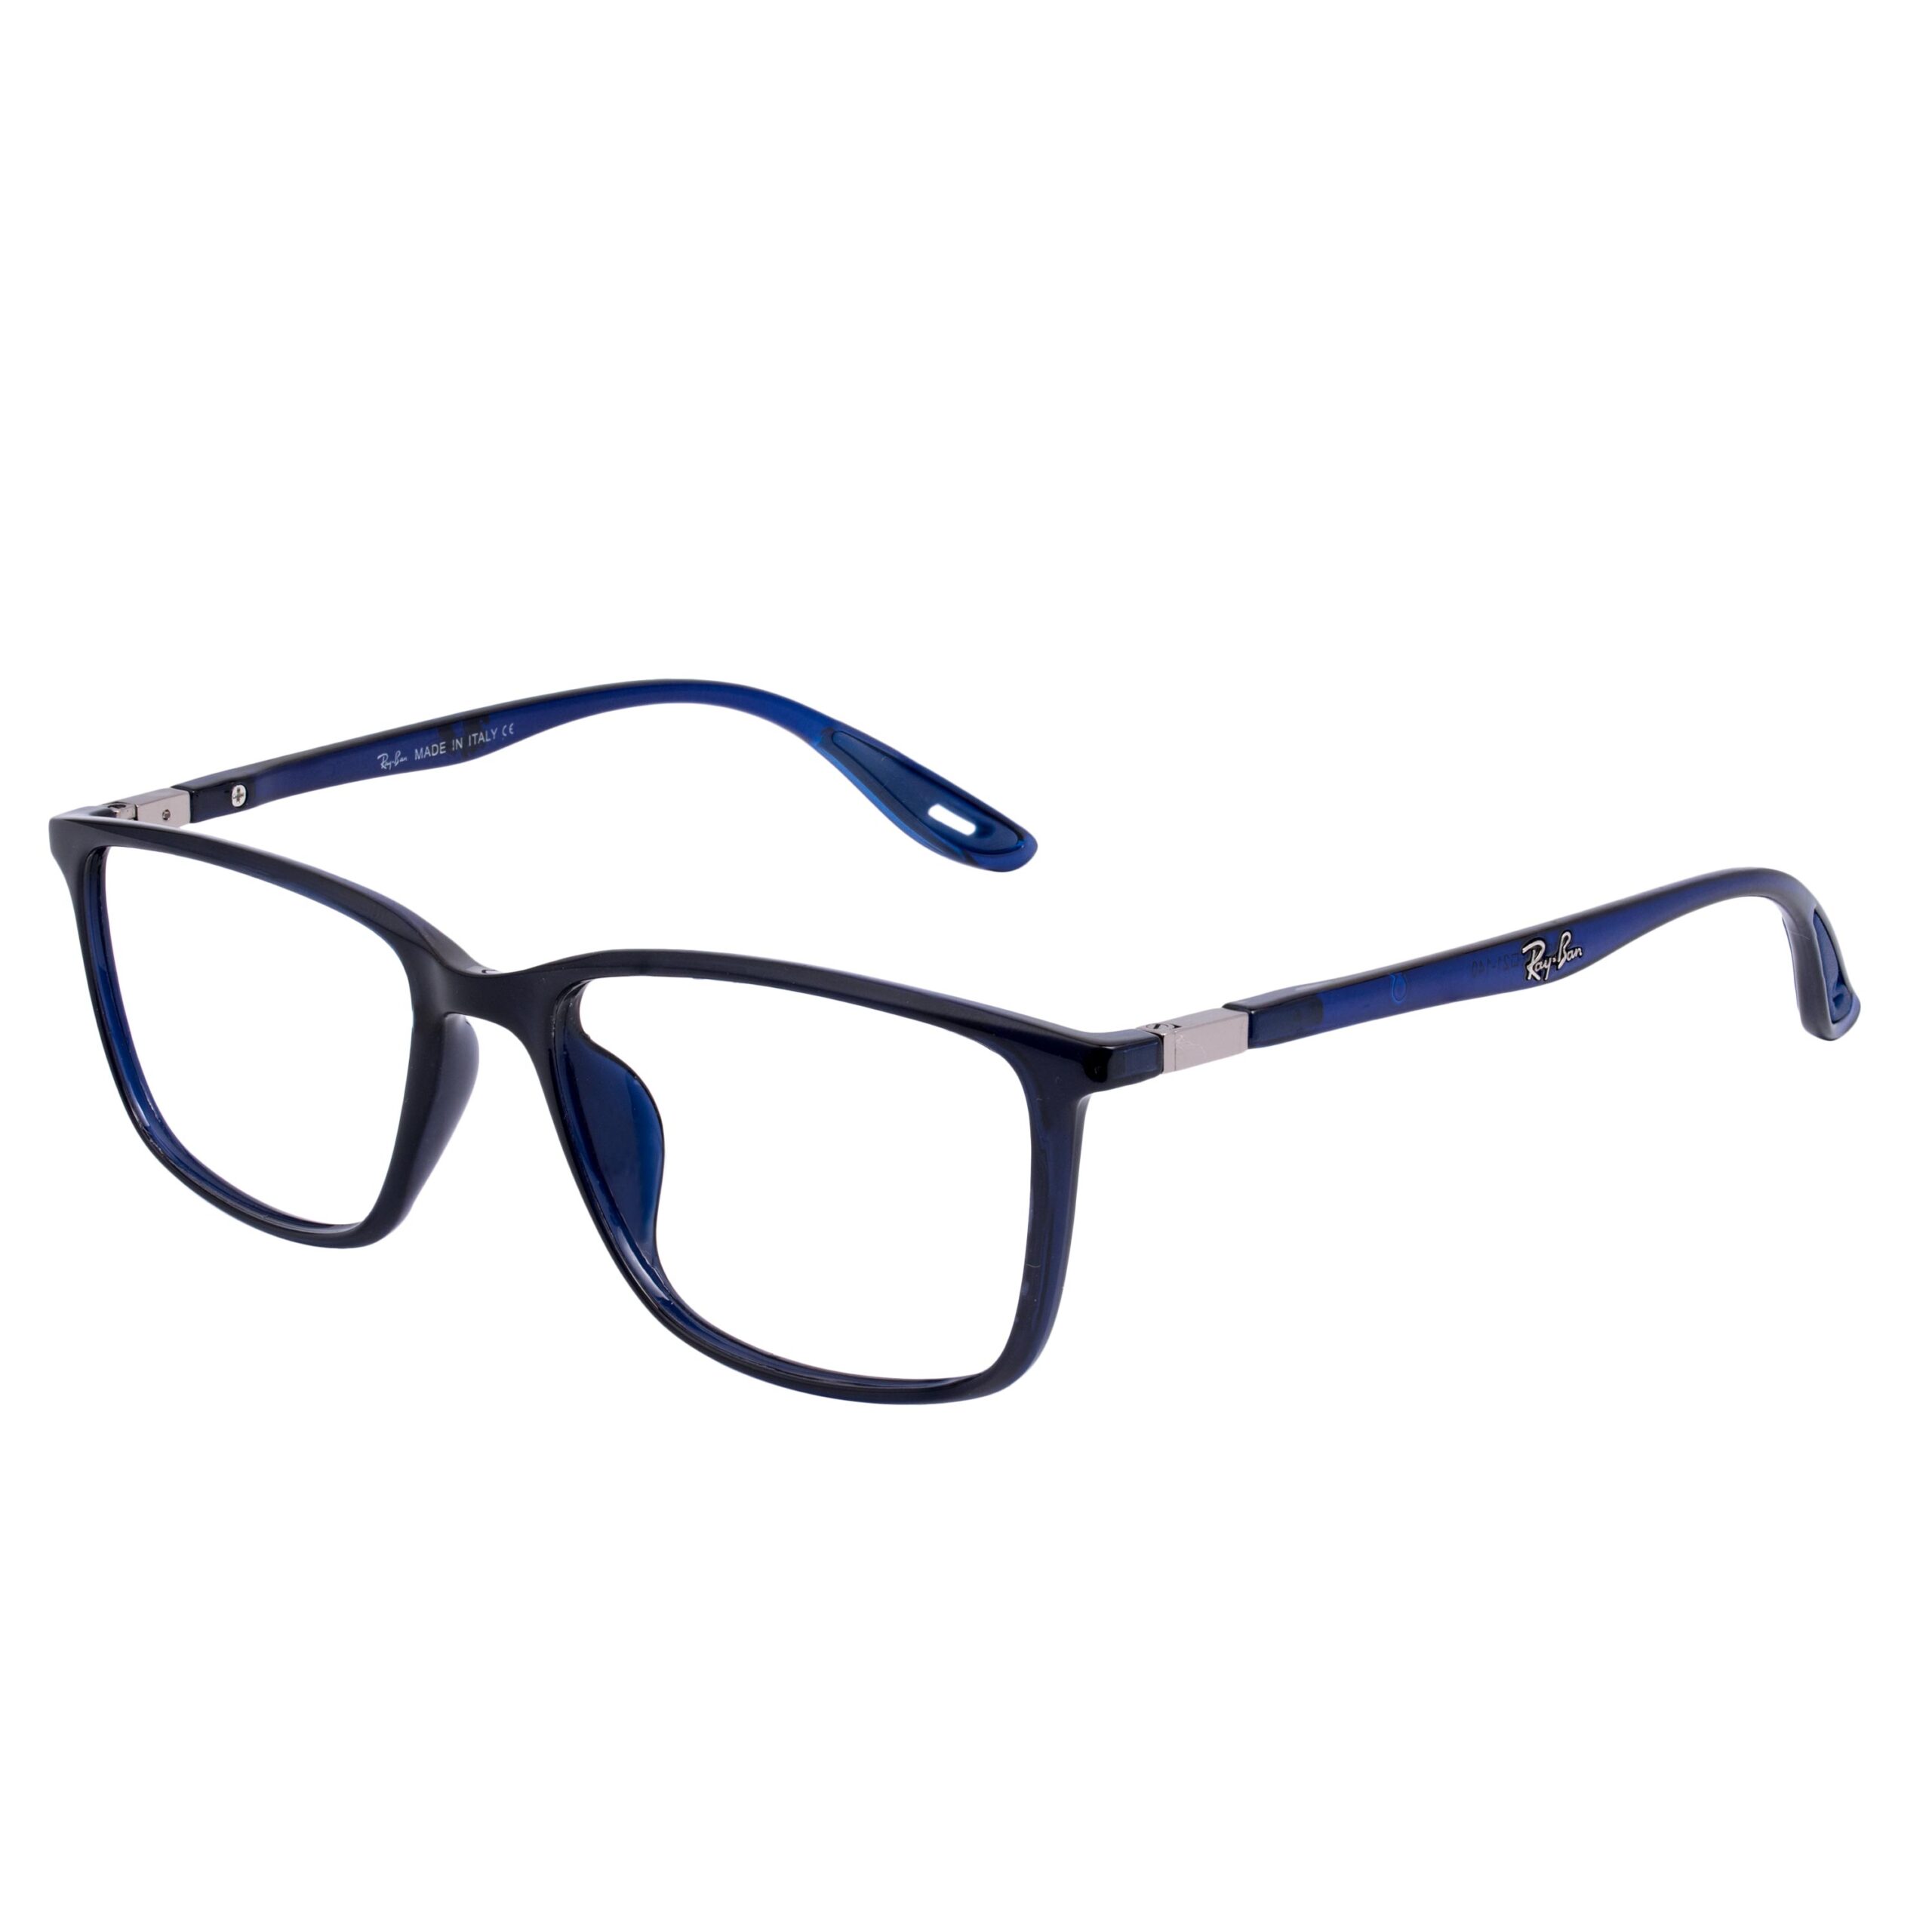 Bluery - Eyeglass.pk